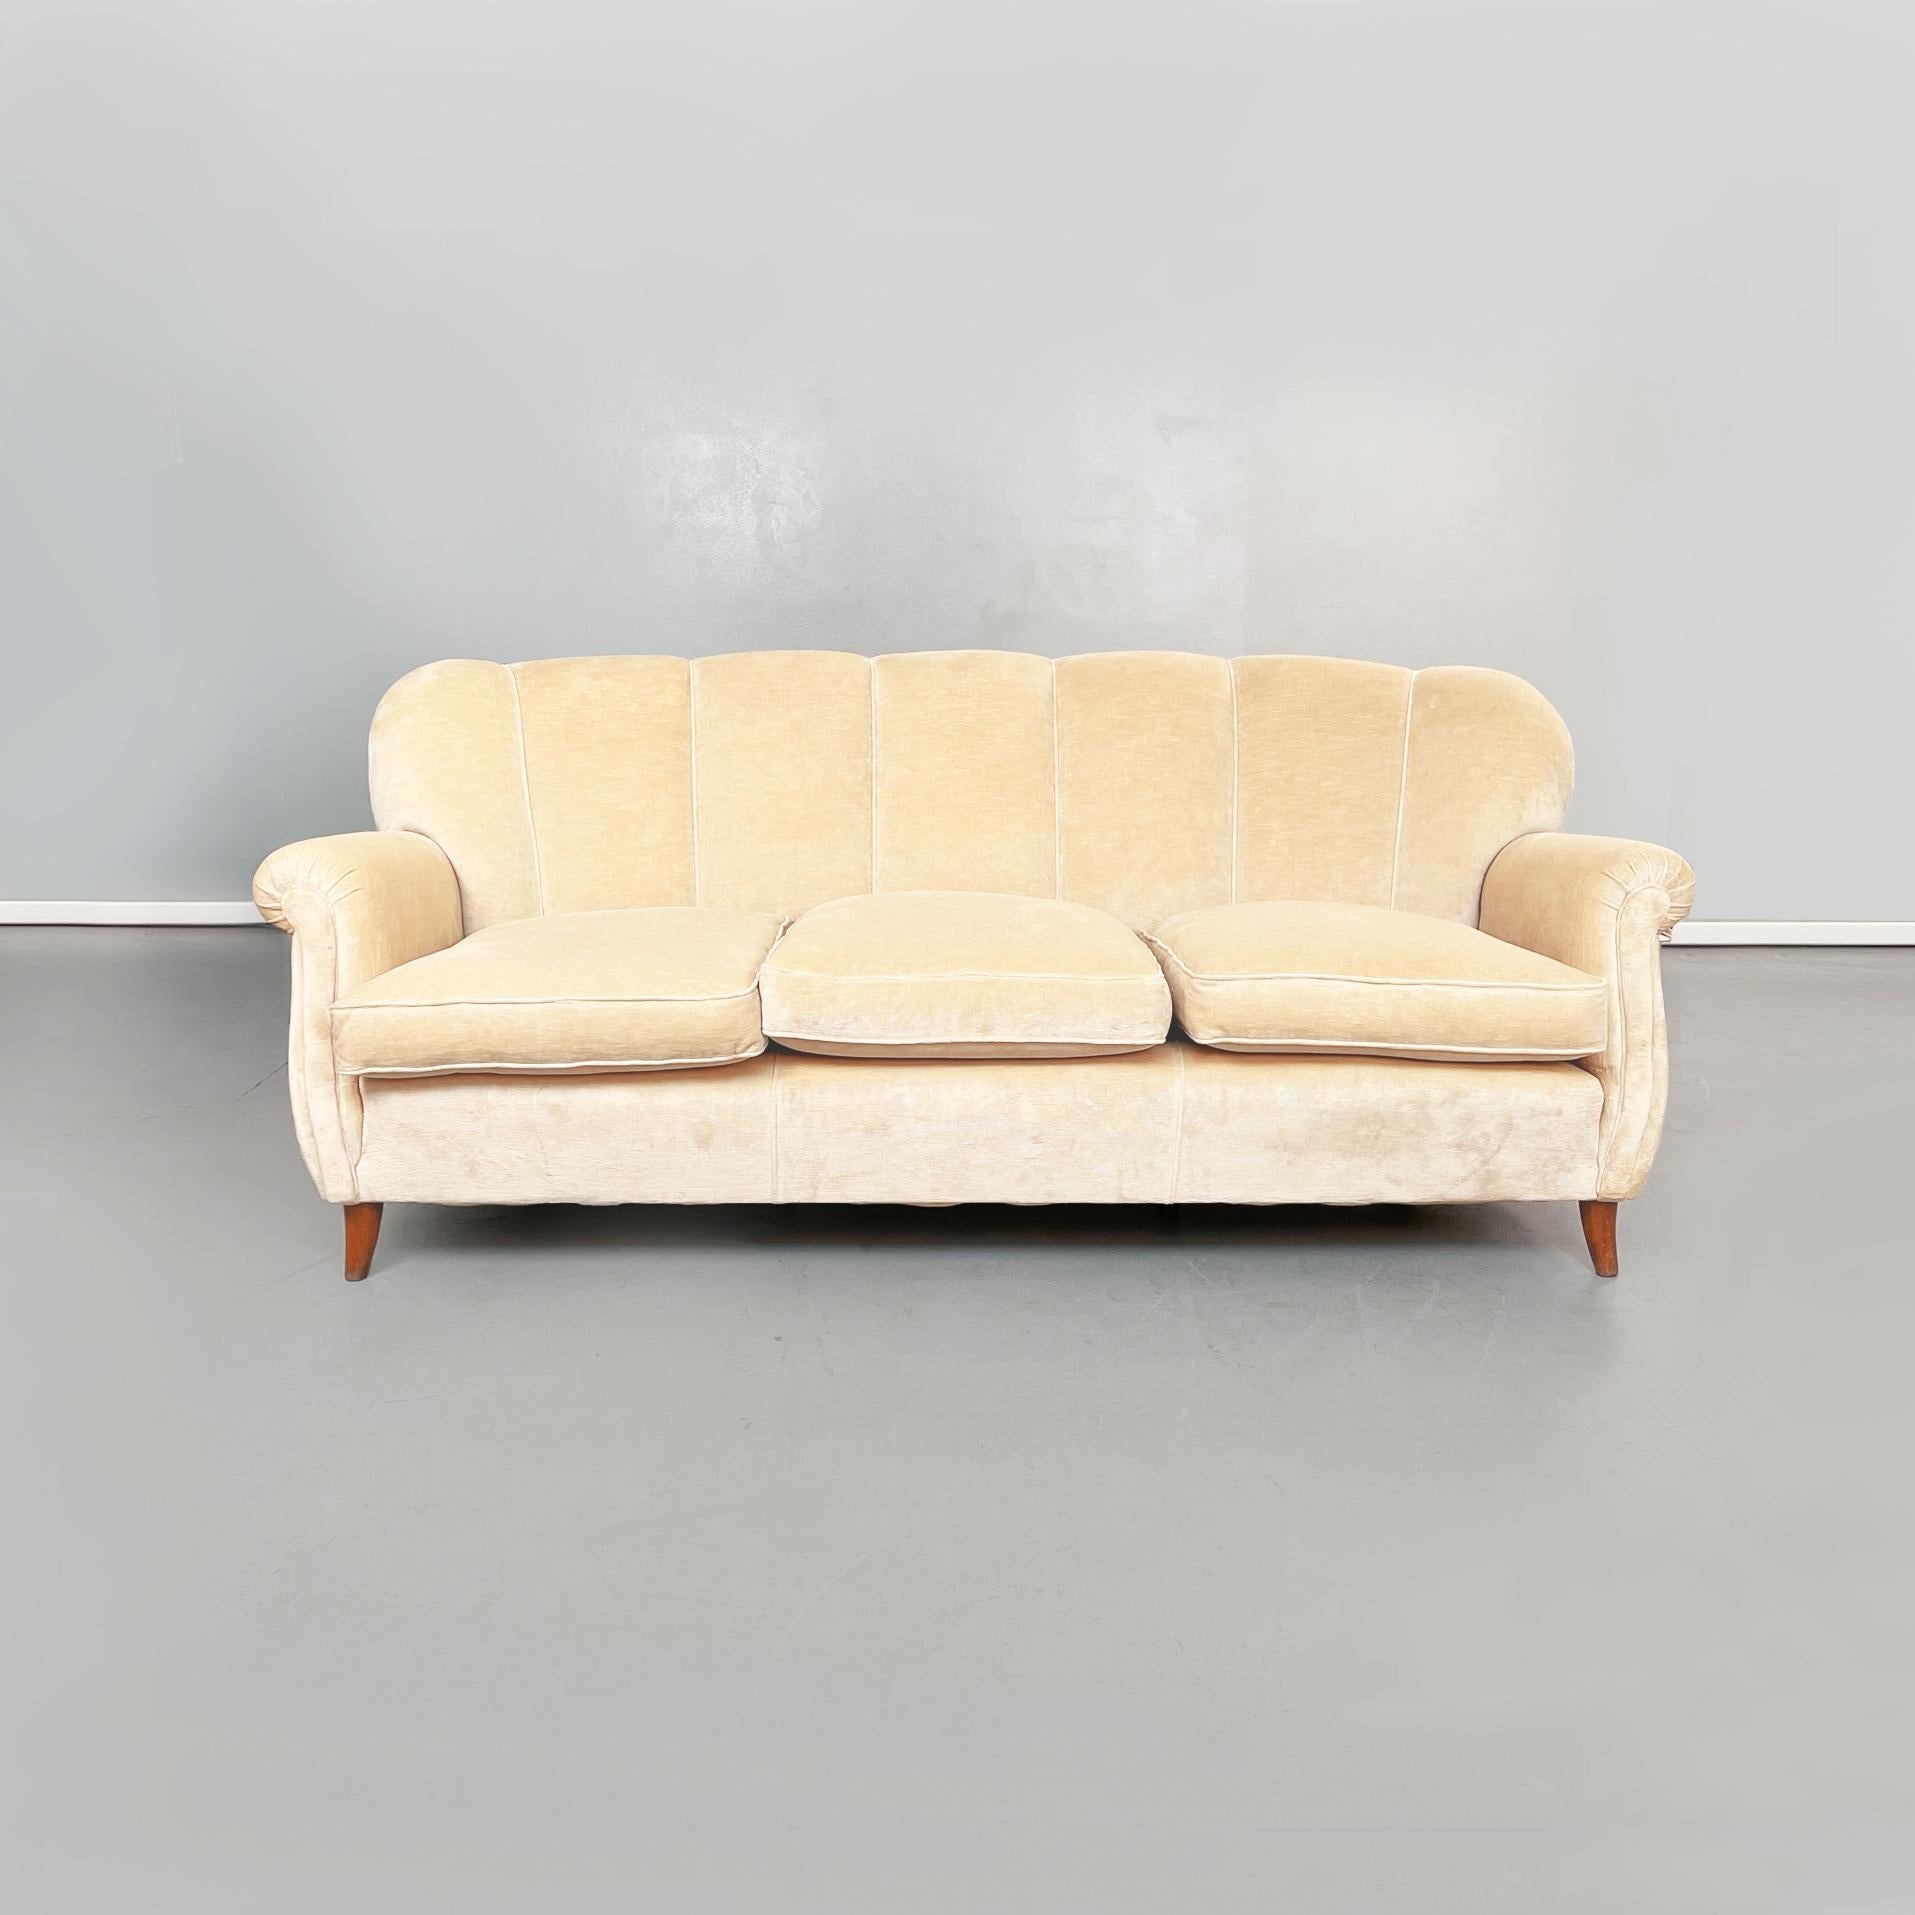 Italienisches Holzsofa aus der Mitte des Jahrhunderts mit beigem Stoff, 1960er Jahre
Dreisitzer-Sofa aus beigem Stoff und Holzgestell. Die Sitzfläche des Sofas besteht aus 3 Kissen, die der Form der Rückenlehne folgen. Der Rücken hat mehrere